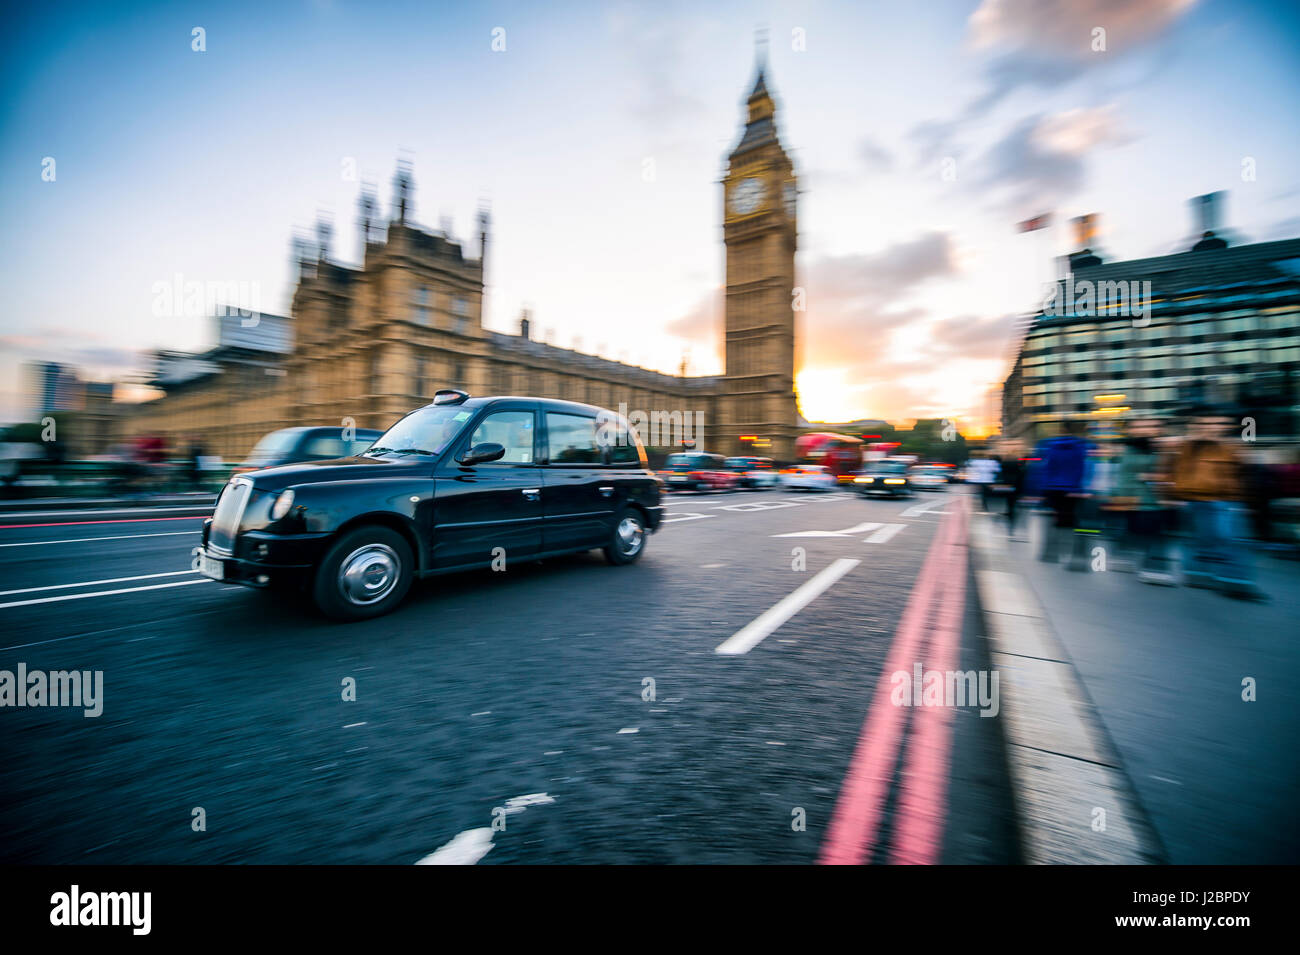 Londres - 4 octobre, 2016 : London black cab durs passé Big Ben et les chambres du Parlement dans un flou sur le pont de Westminster. Banque D'Images